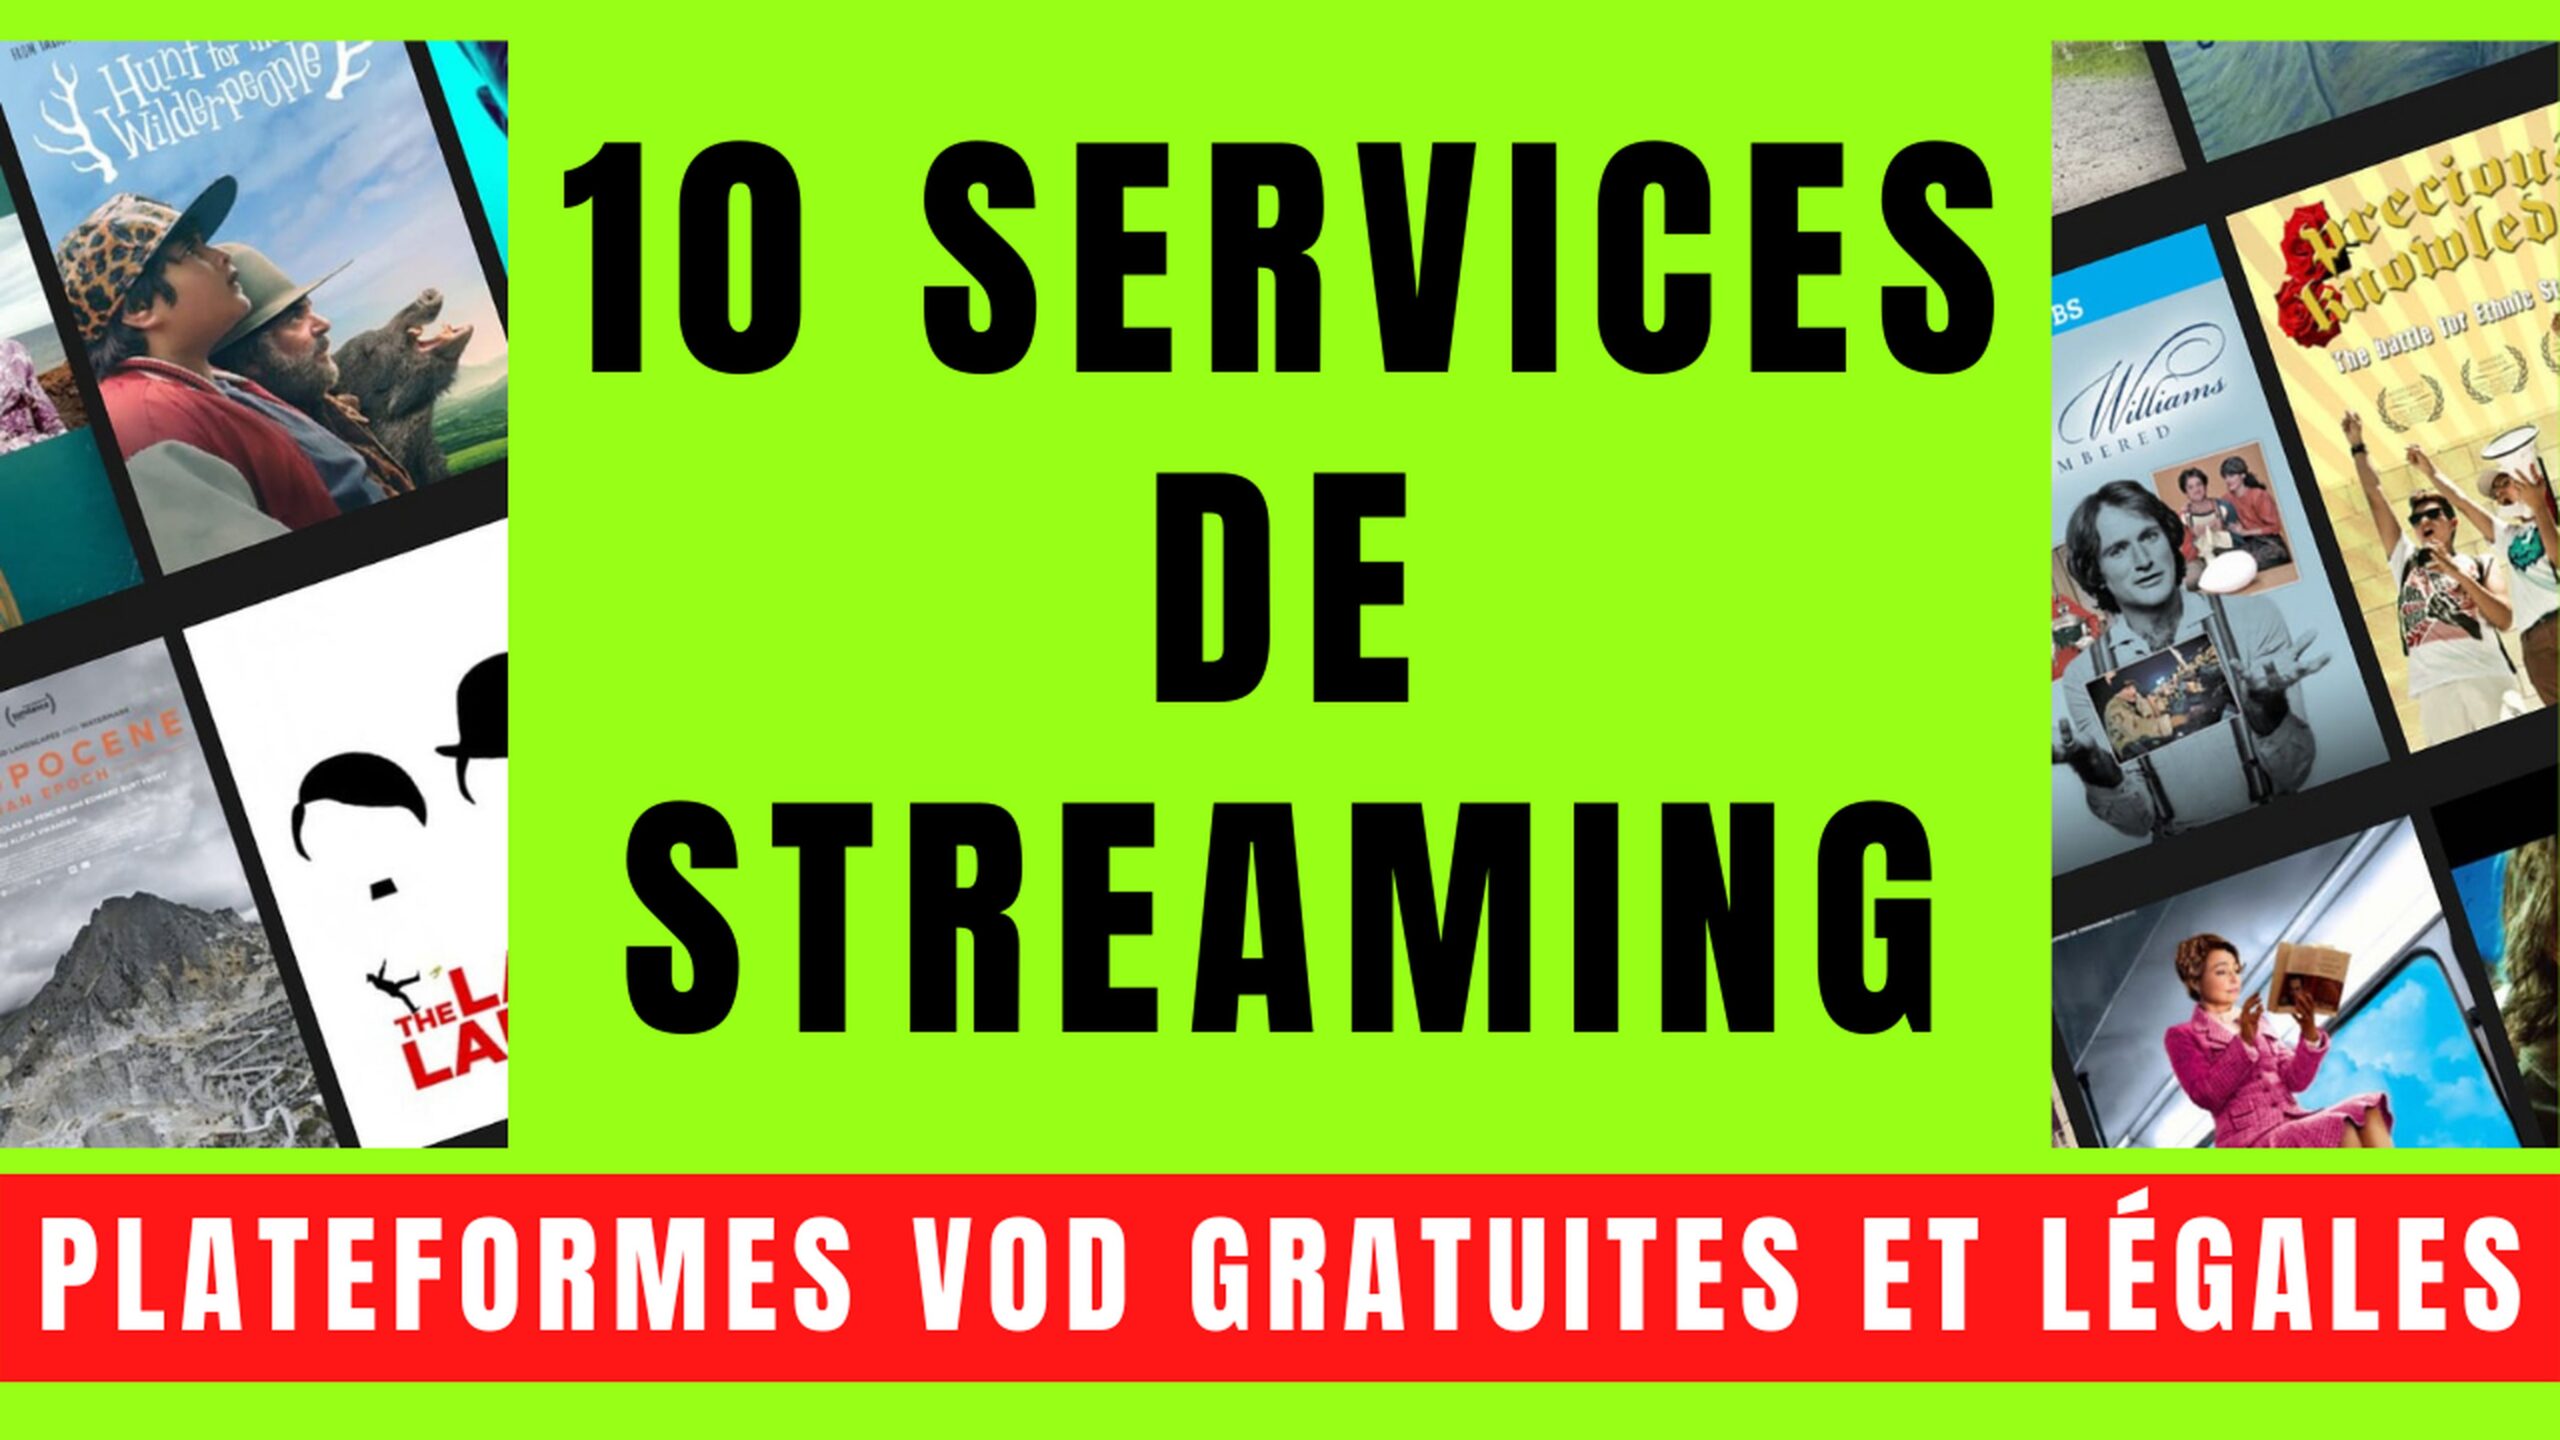 10 SERVICES VOD avec STREAMING GRATUIT et LÉGAL 10